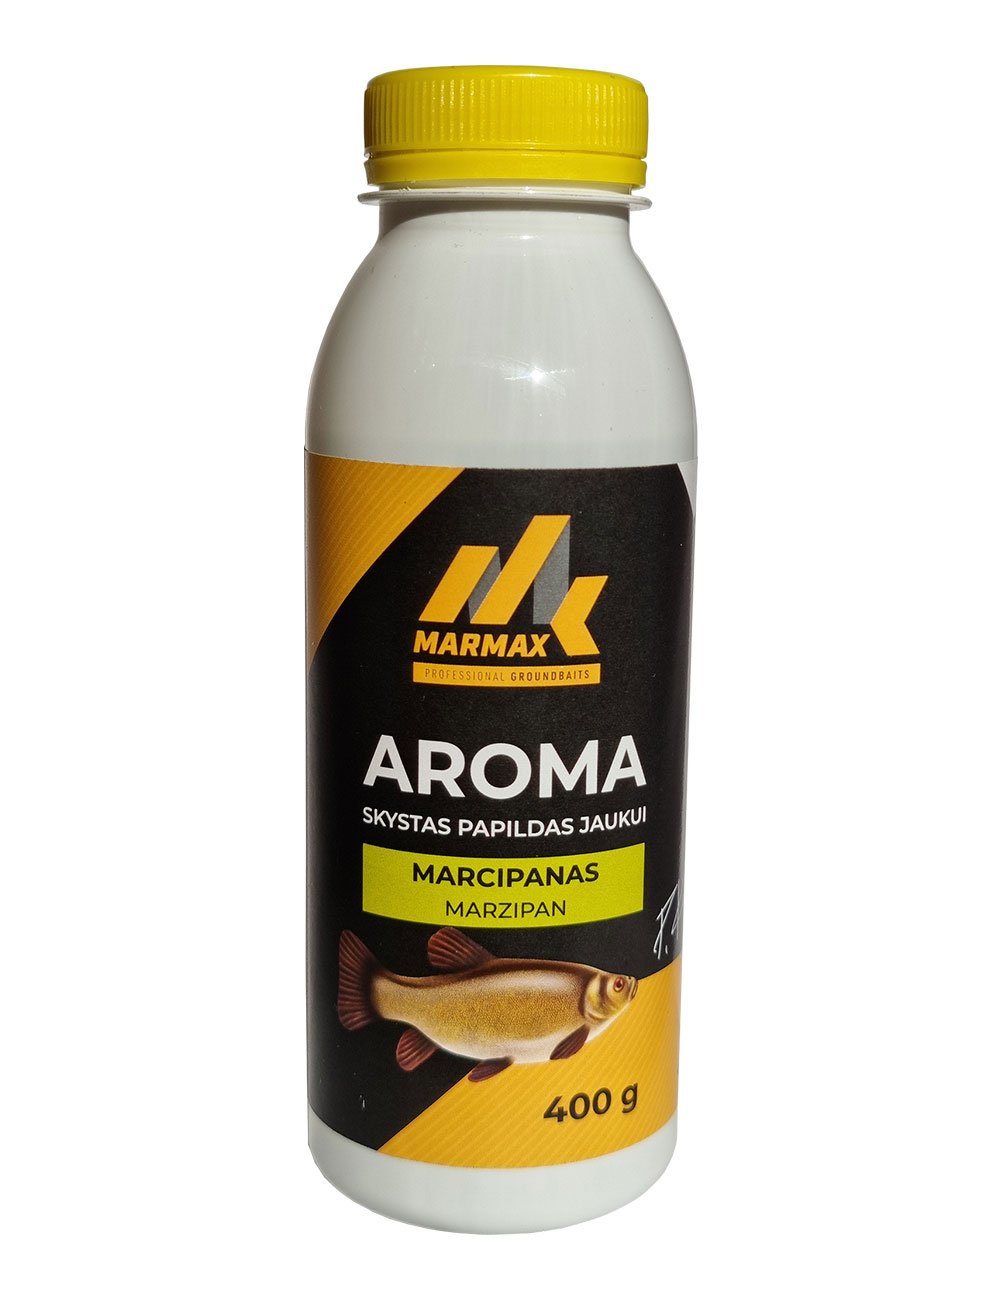 Aroma - Marcipanas (400g)